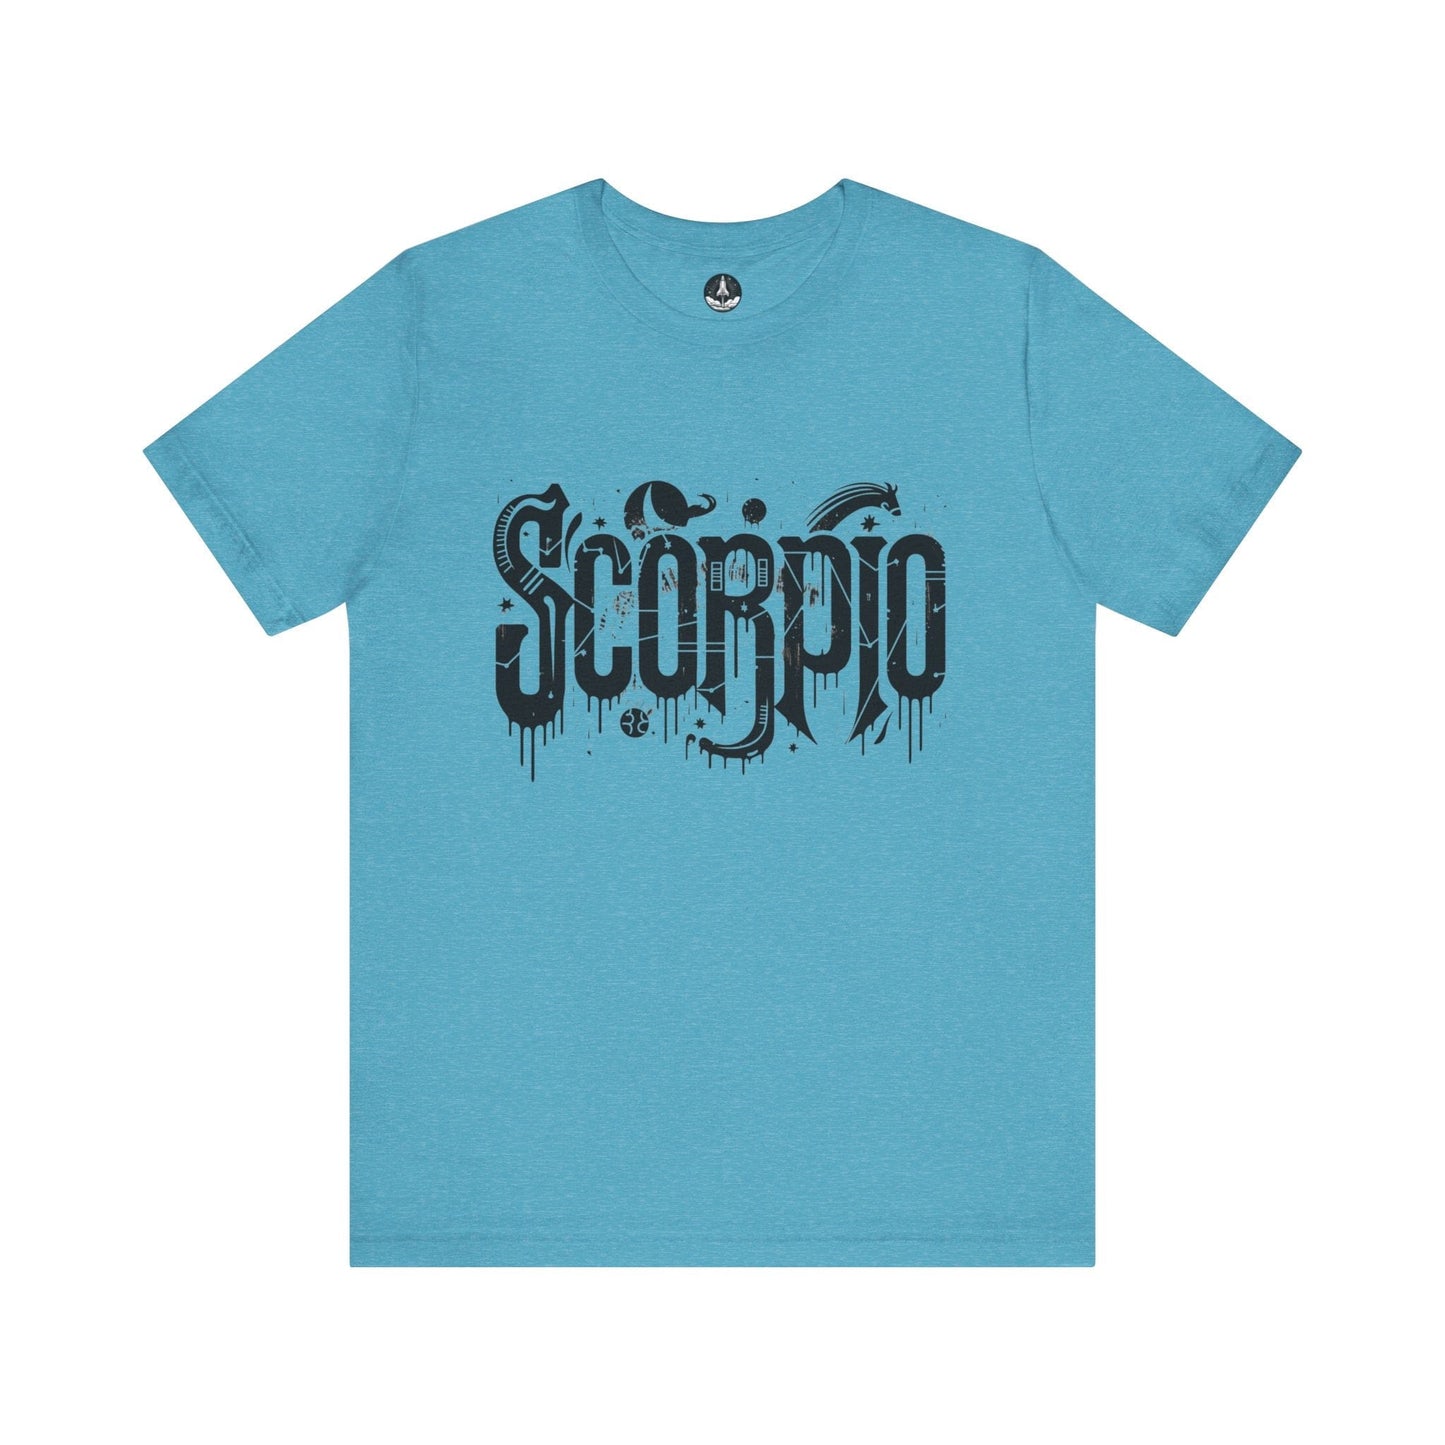 T-Shirt Heather Aqua / S Shadow Strike Scorpio TShirt: Enigmatic Power